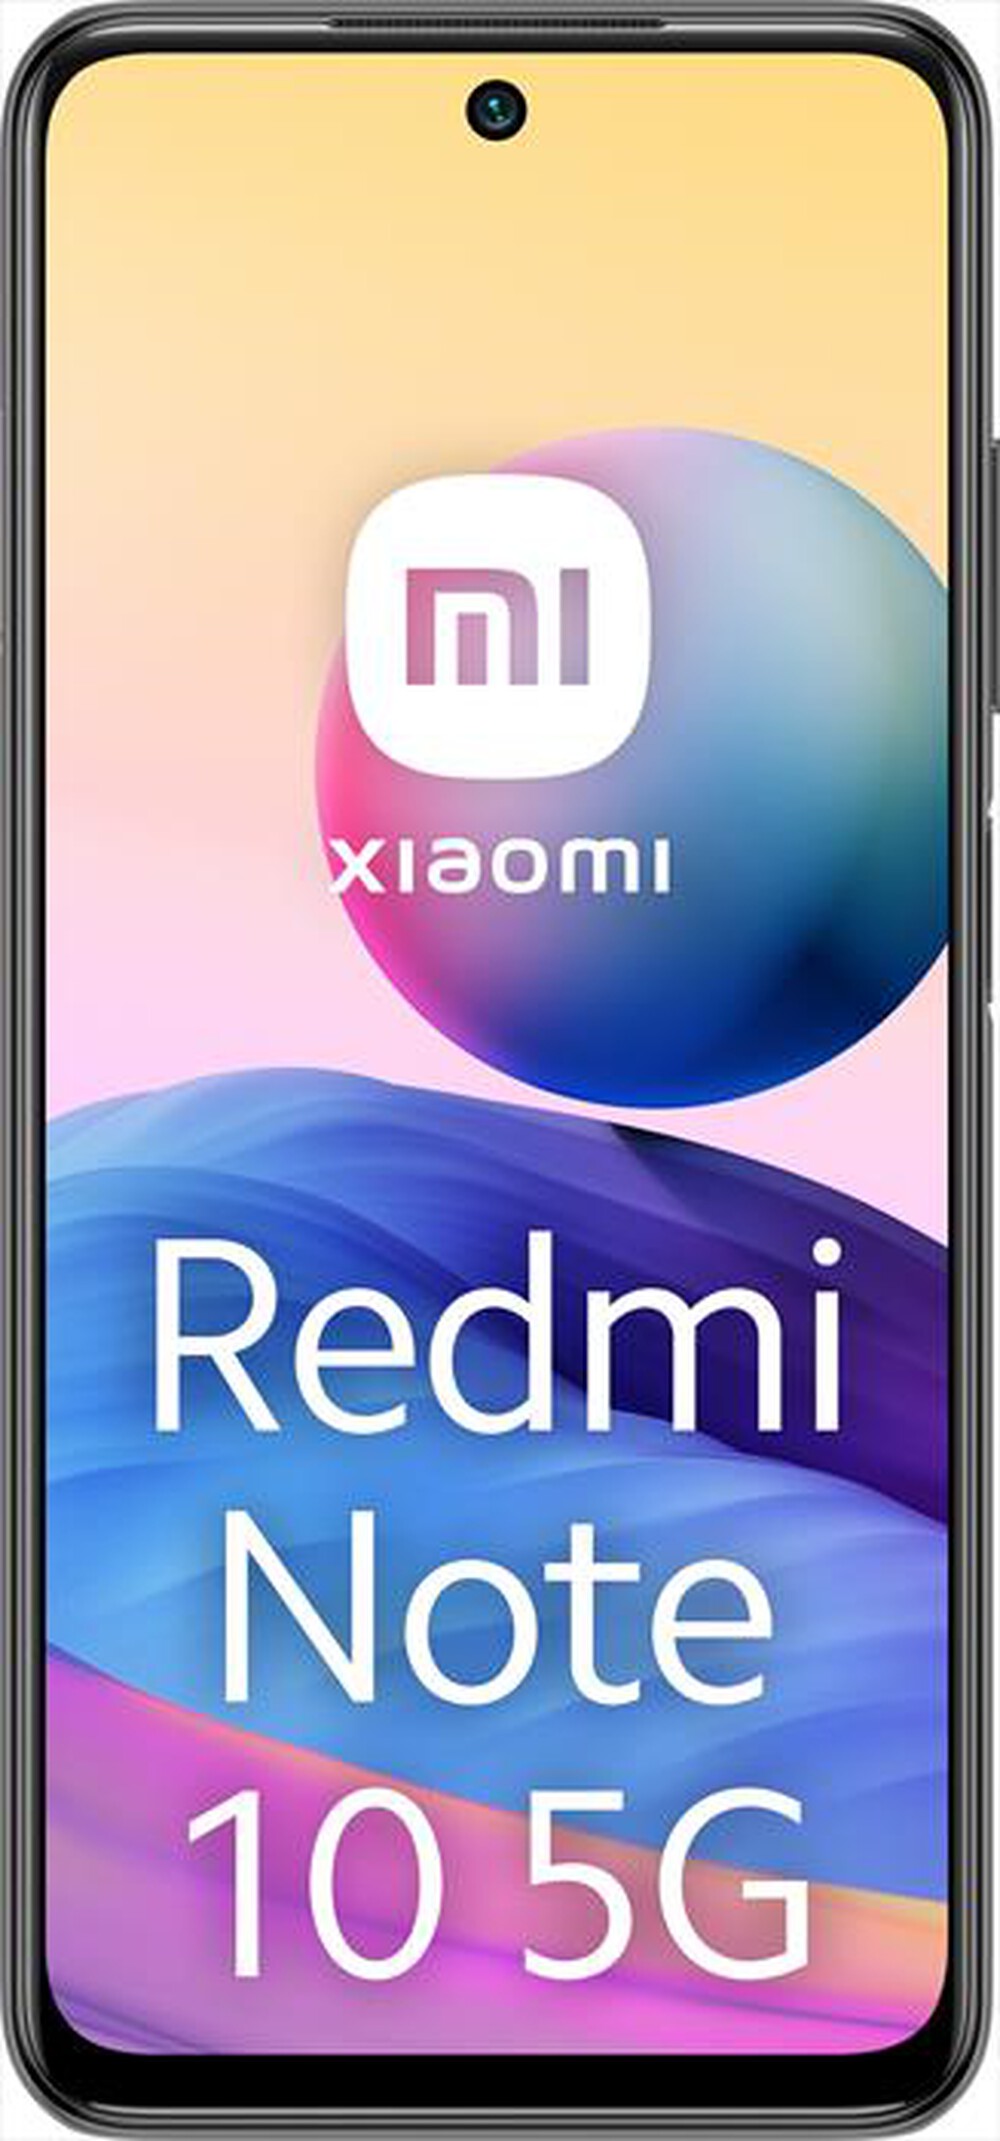 "XIAOMI - REDMI NOTE 10 5G 4+128GB-Graphite Gray"